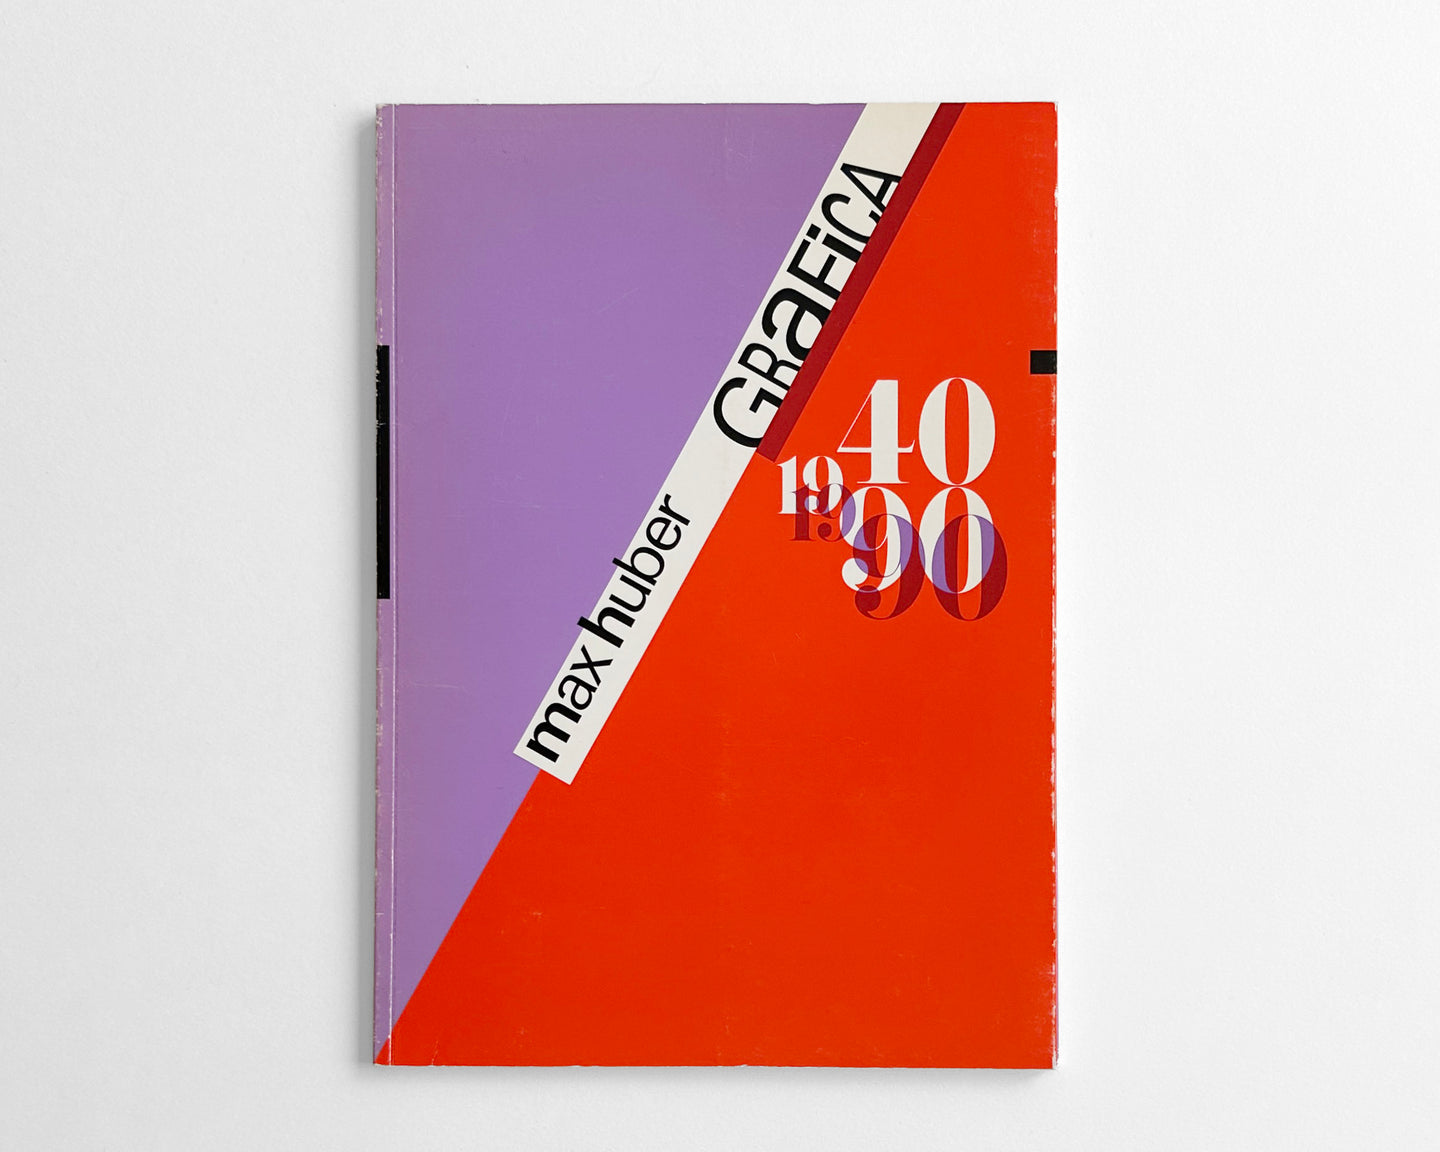 Max Huber Grafica 1940—1990 [Chiasso Exhibition Catalog, Achille Castiglioni]